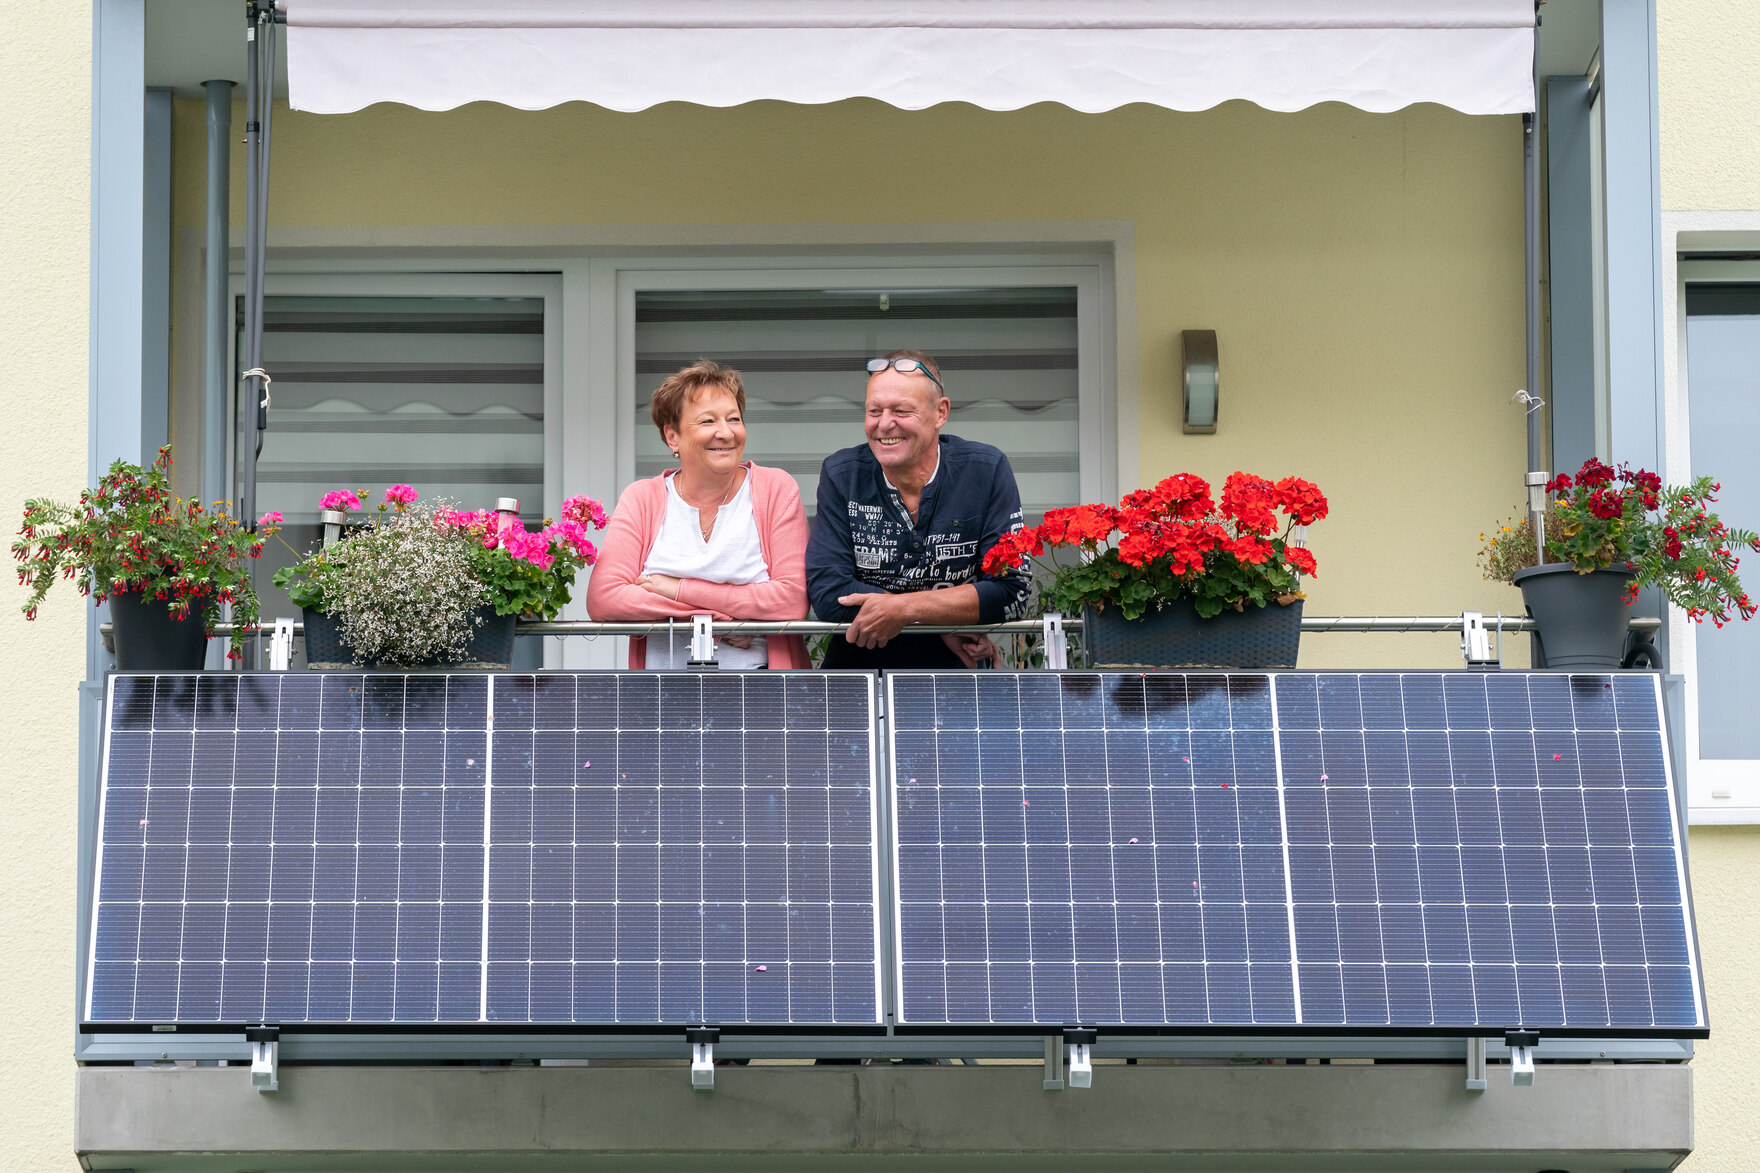 Förderrichtlinie Energie und Speicher, Symbolbild: Zwei Personen auf einem Balkon, davor ist ein Balkonkraftwerk installiert